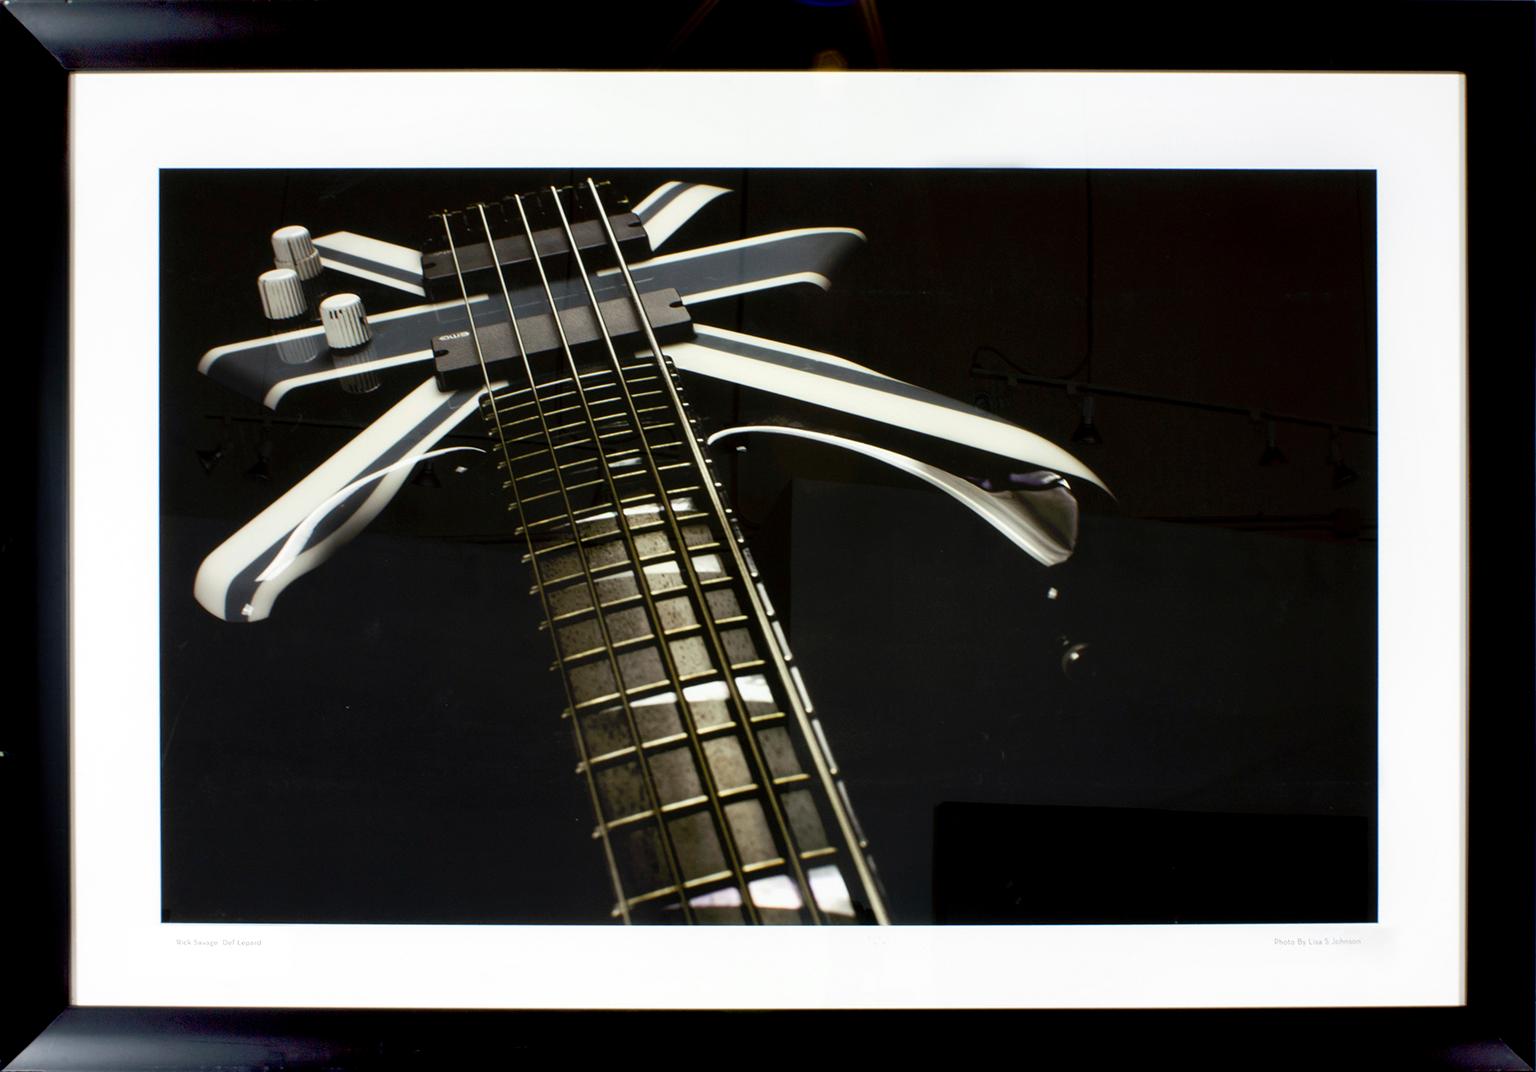 Photo originale d'une guitare Rick Savage Def Leppard prise par Lisa S. Johnson pour son livre "108 Rock Star Guitars". "Rick Savage Def Lepard" imprimé dans la marge inférieure gauche. "Photo de Lisa S. Johnson" imprimé dans la marge avant